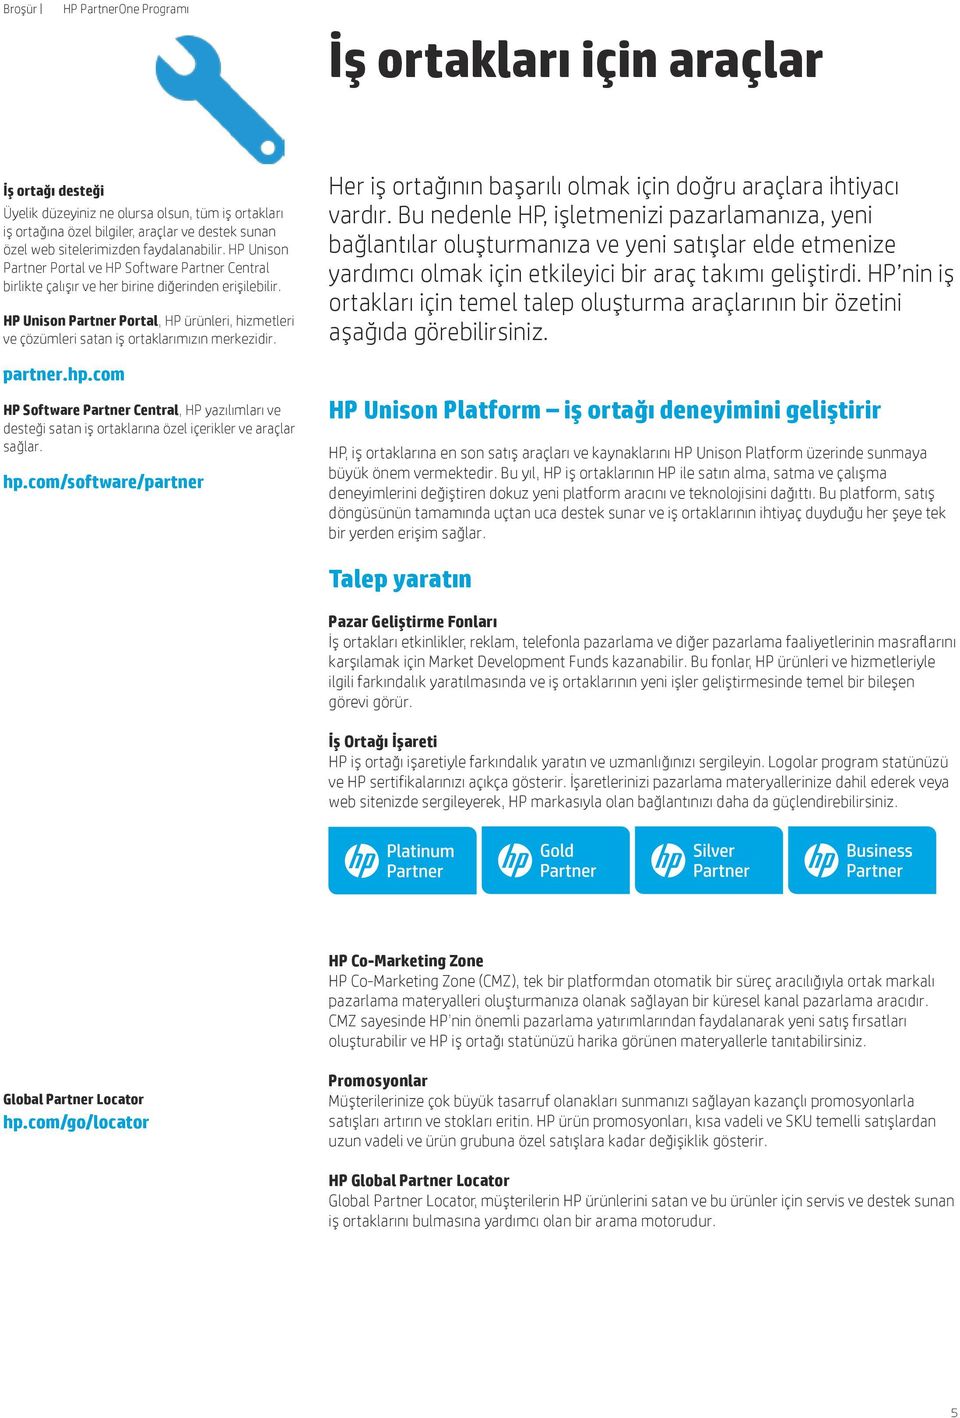 HP Unison Partner Portal, HP ürünleri, hizmetleri ve çözümleri satan iş ortaklarımızın merkezidir. partner.hp.